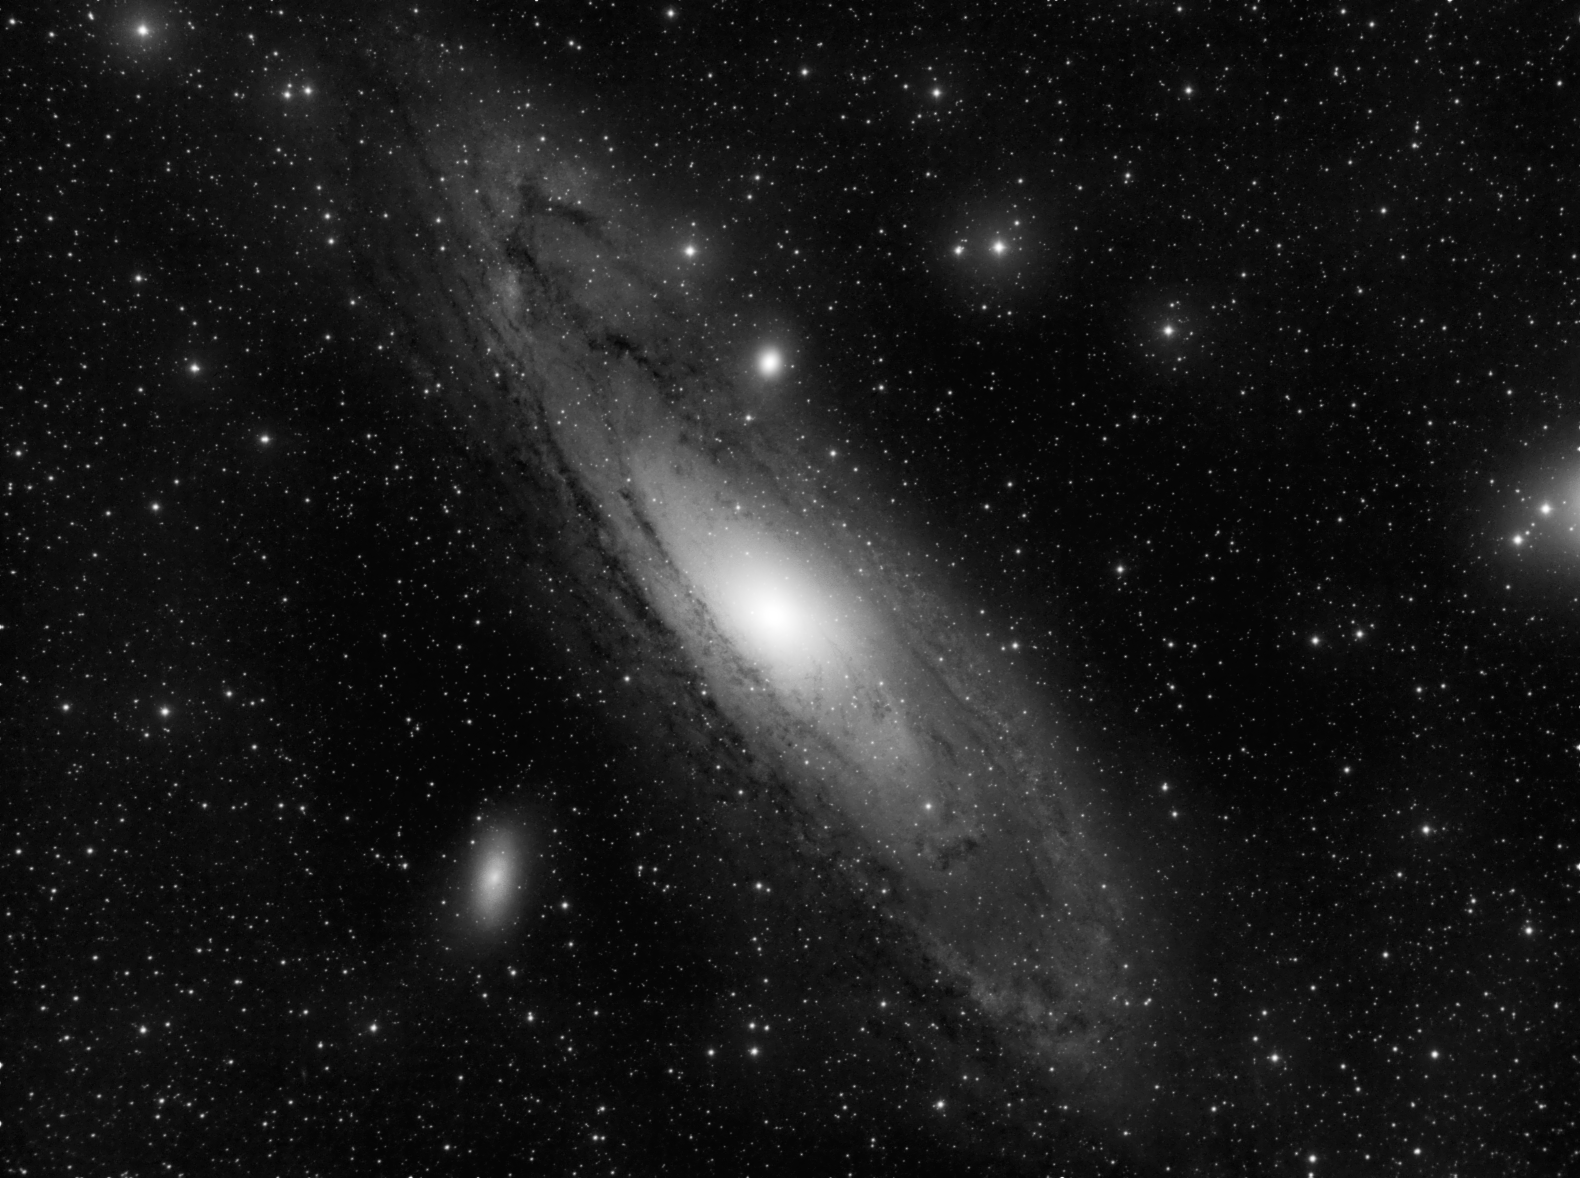 Galaxia Andrómeda, tomada a través de una bruma bastante espesa...